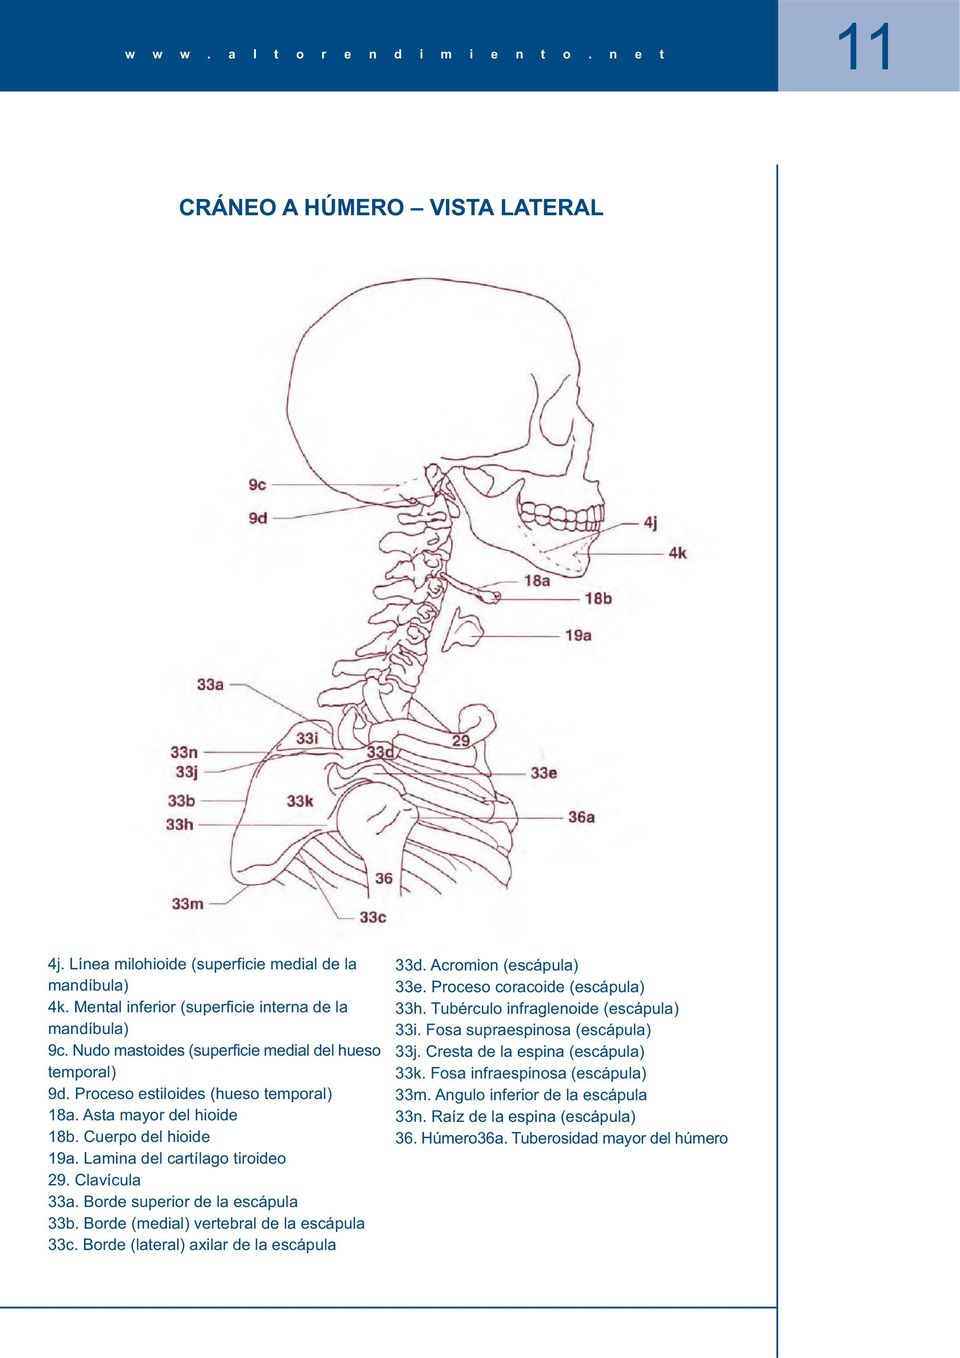 Borde superior de la escápula 33b. Borde (medial) vertebral de la escápula 33c. Borde (lateral) axilar de la escápula 33d. Acromion (escápula) 33e. Proceso coracoide (escápula) 33h.